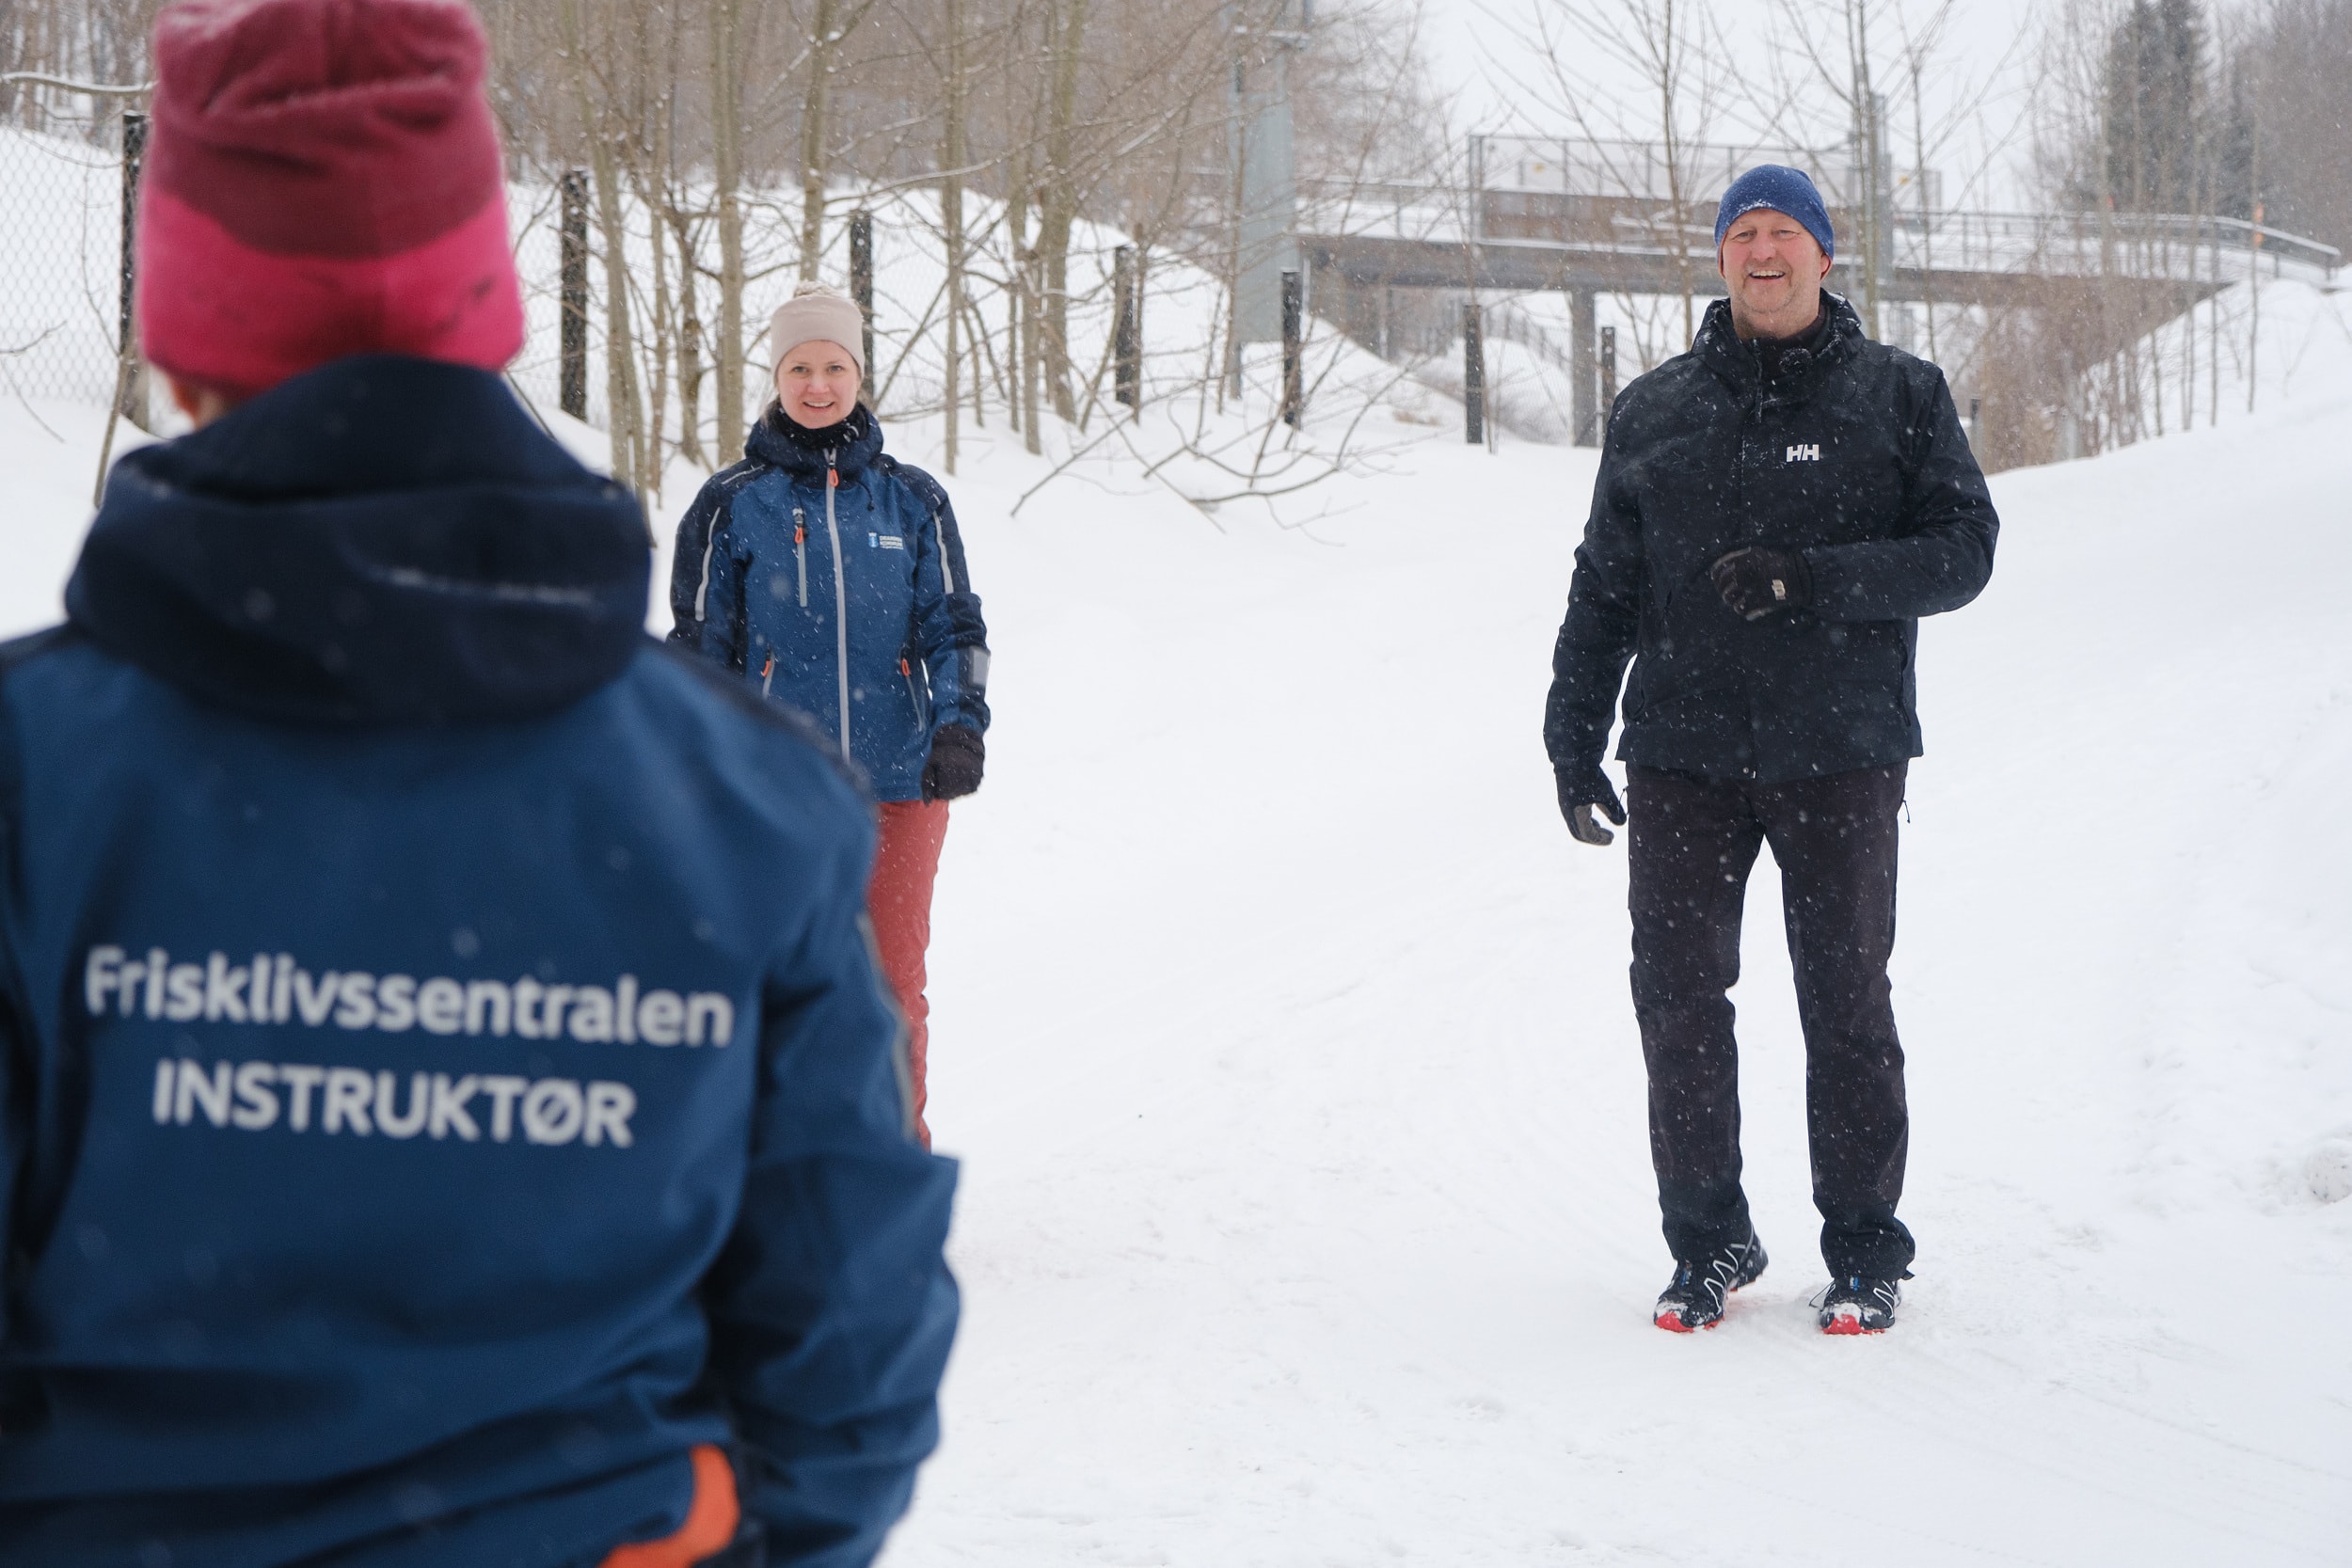 En mann trener ute i snøen. I forgrunn er det en kvinnelig instruktør med ryggen i mot. På ryggen står det frisklivssentralen